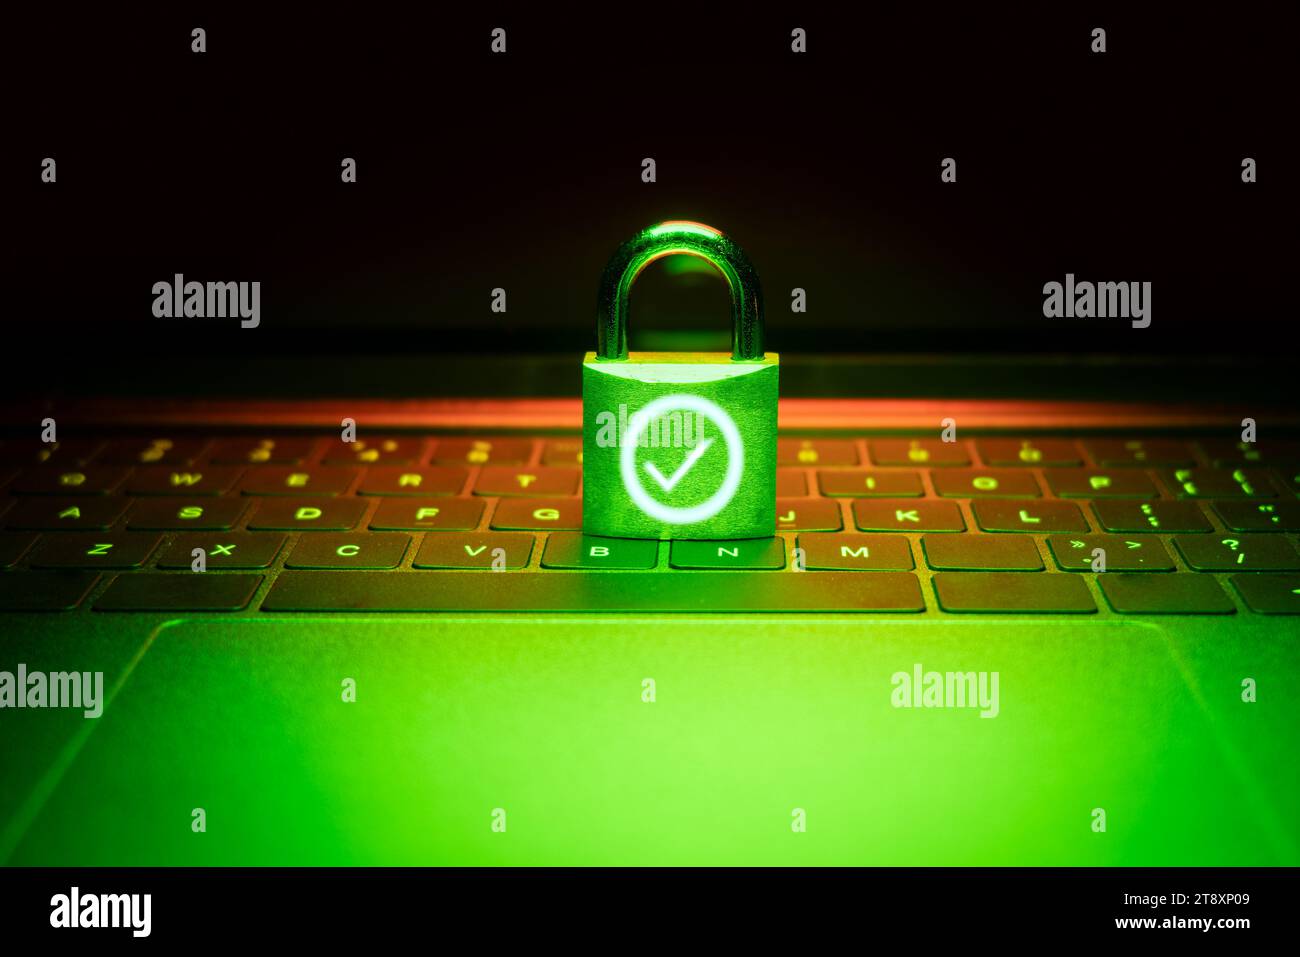 Nahaufnahme eines Vorhängeschlosses auf einem Laptop, der mit grünem Licht beleuchtet ist. Phishing, Cybersicherheitsgefahr oder Ransomware-Angriff. Das Vorhängeschloss wird entsperrt und angezeigt Stockfoto